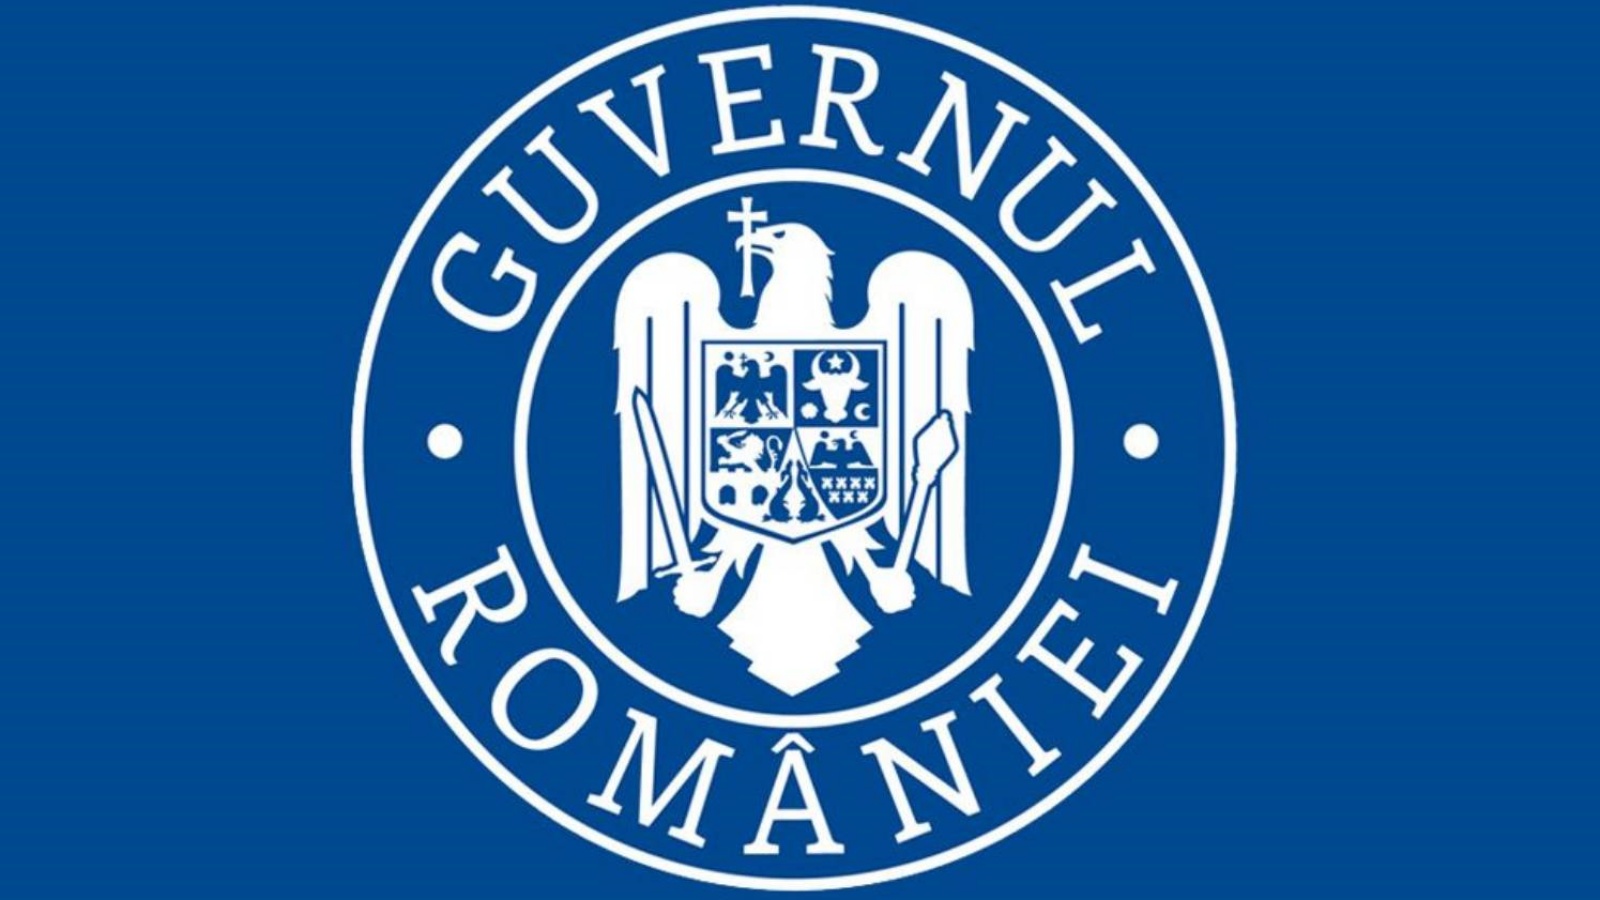 Bijeenkomsten van de regering van Roemenië met boerenverenigingen uit Roemenië